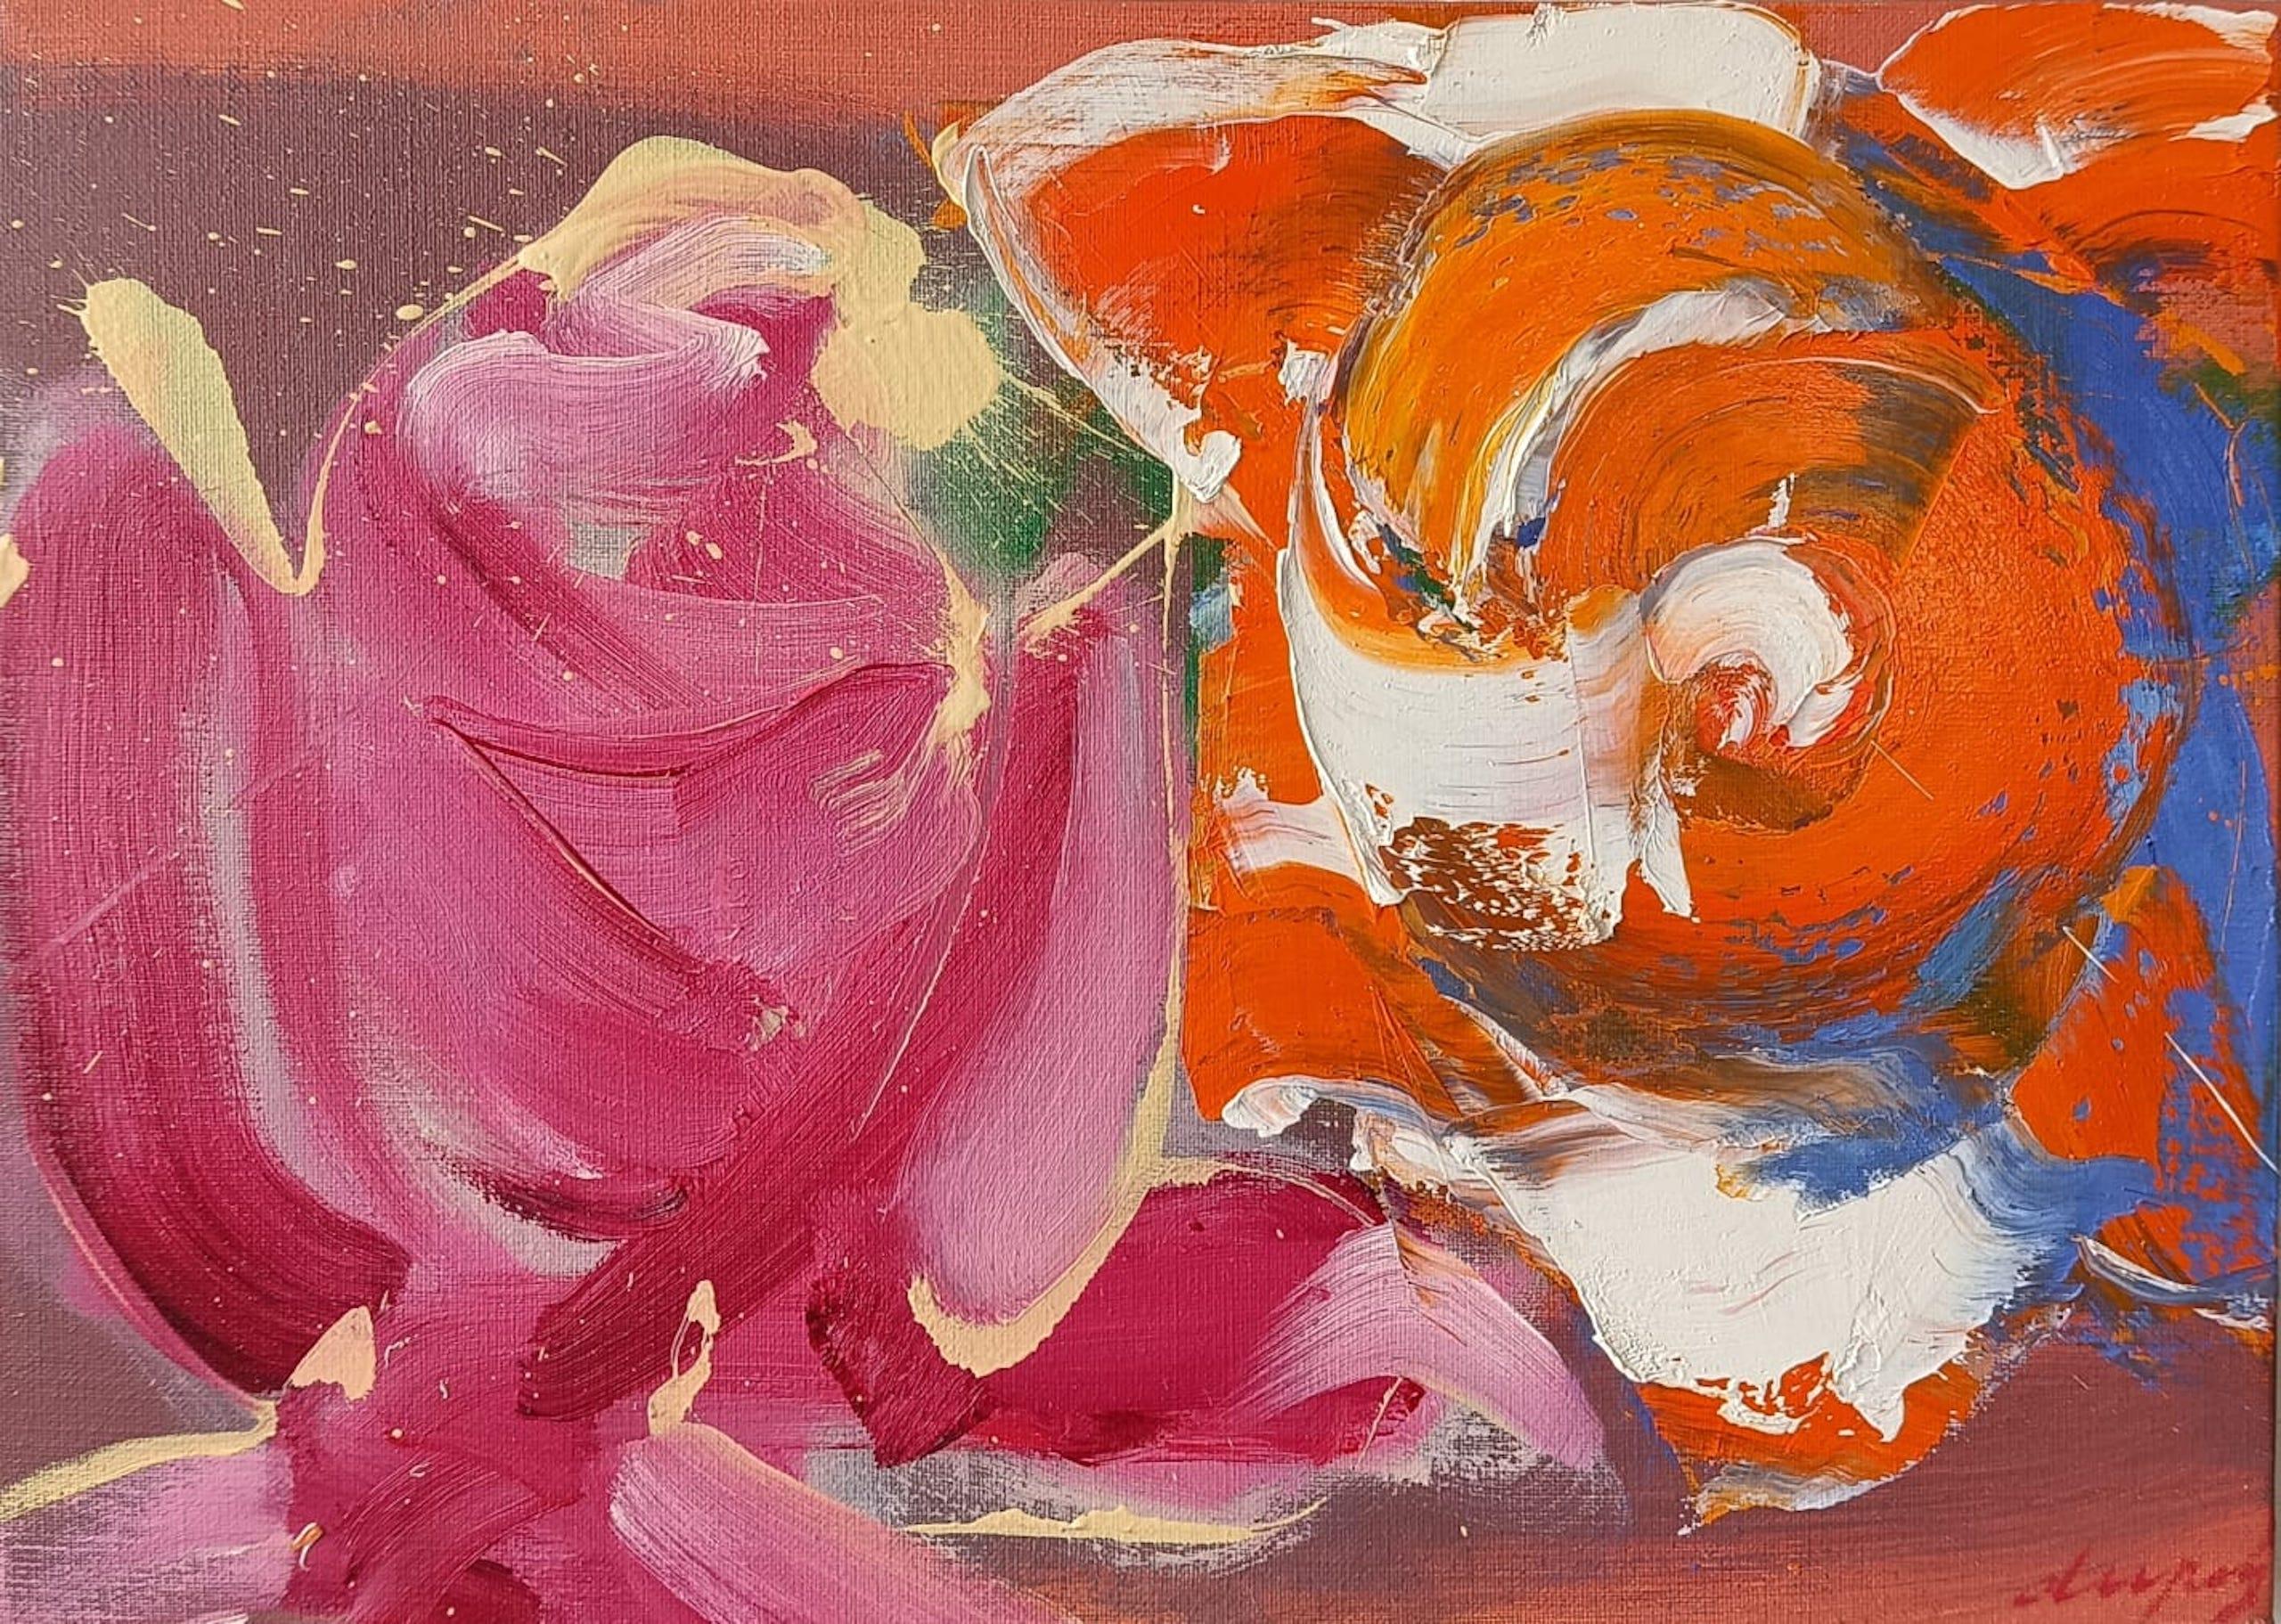 Garden Roses est une peinture unique à l'huile sur toile de l'artiste contemporain Christophe Dupety, dont les dimensions sont de 33 × 46 cm (13 × 18.1 in).
L'œuvre est signée, vendue non encadrée et accompagnée d'un certificat